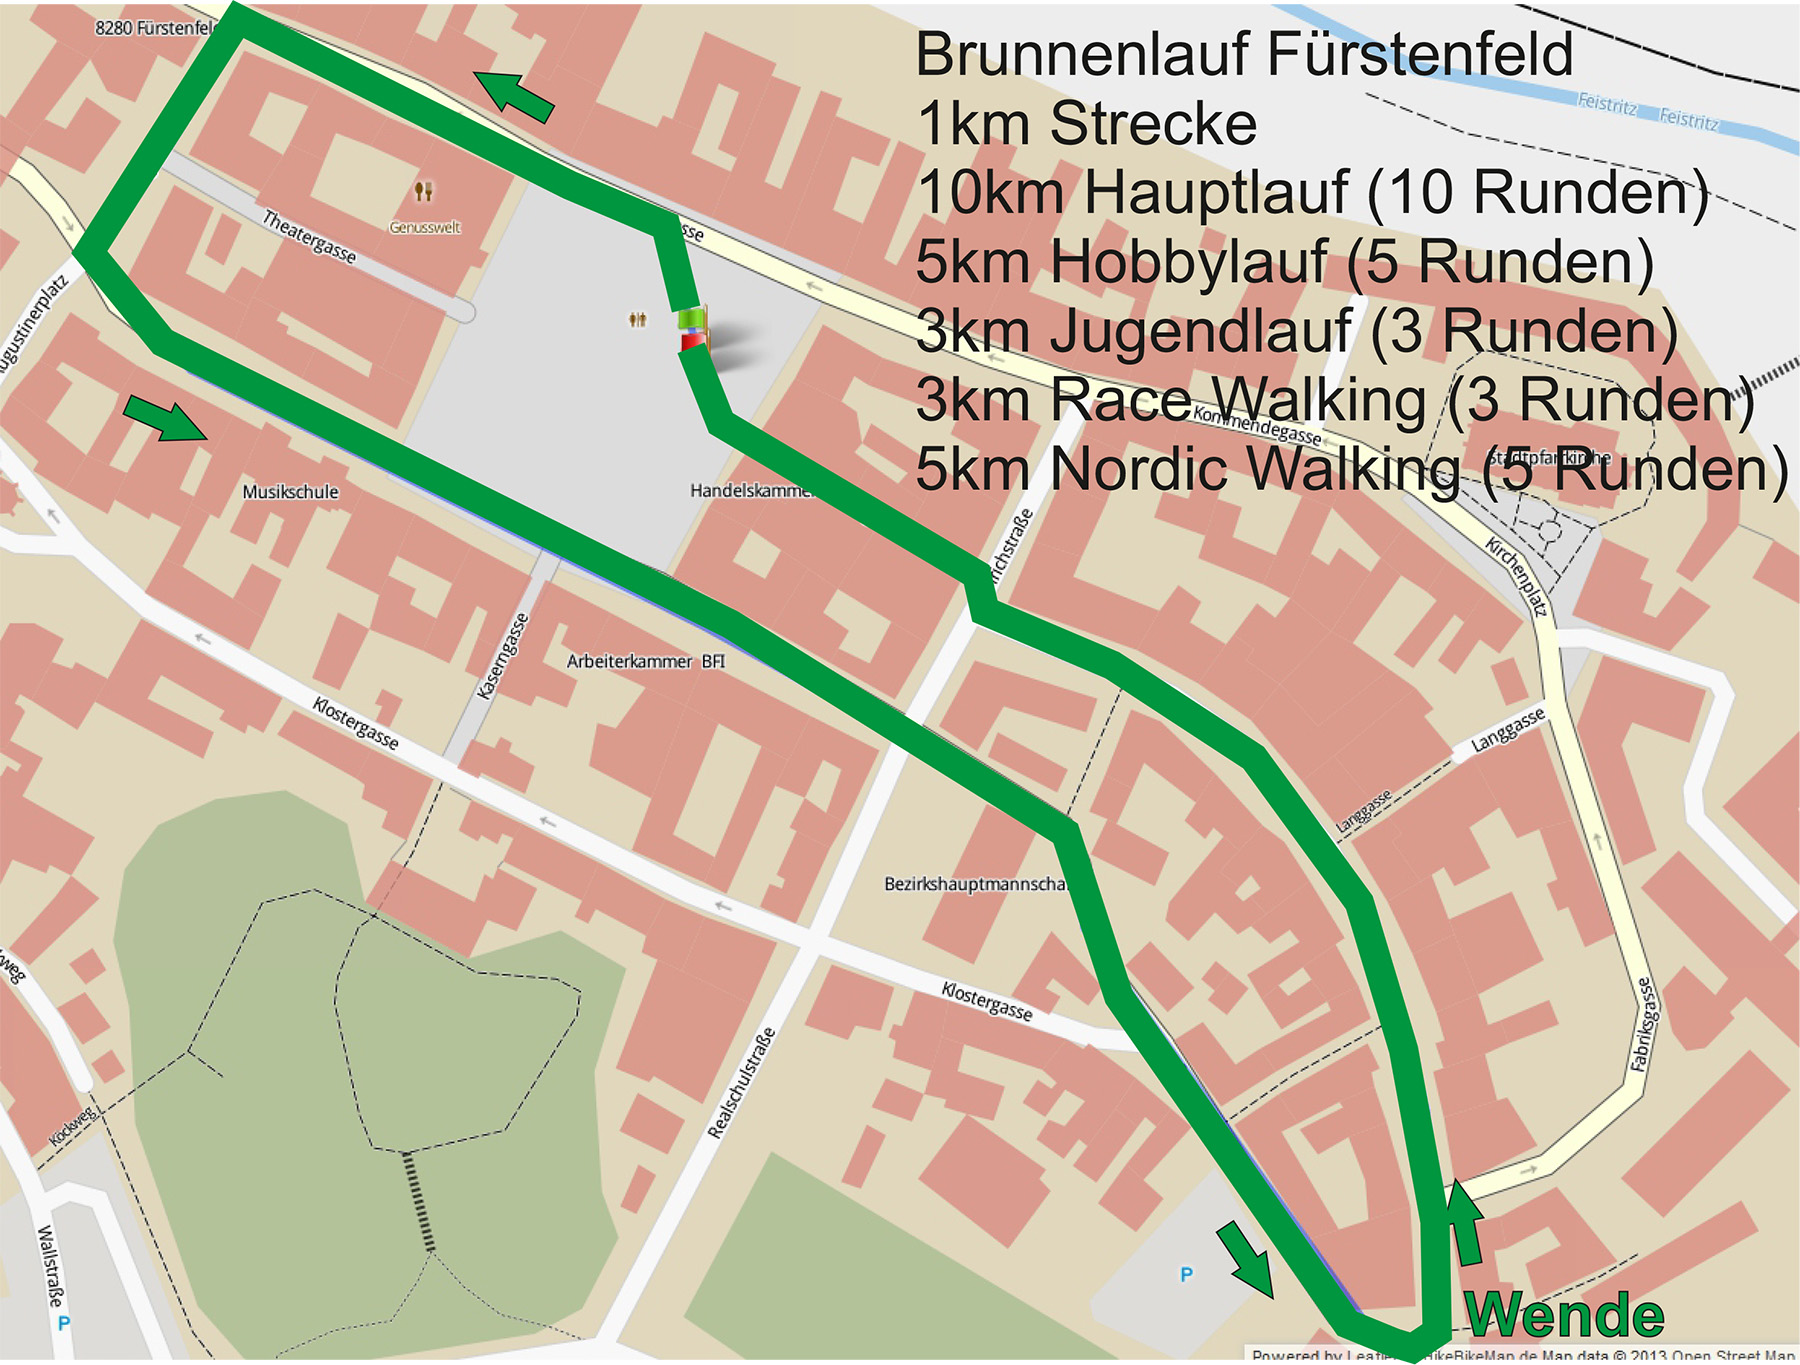 Brunnenlauf - Strecke für Hauptlauf, Volkslauf, Jugendlauf, Business-Staffel, Nordic Walking und Race Walking